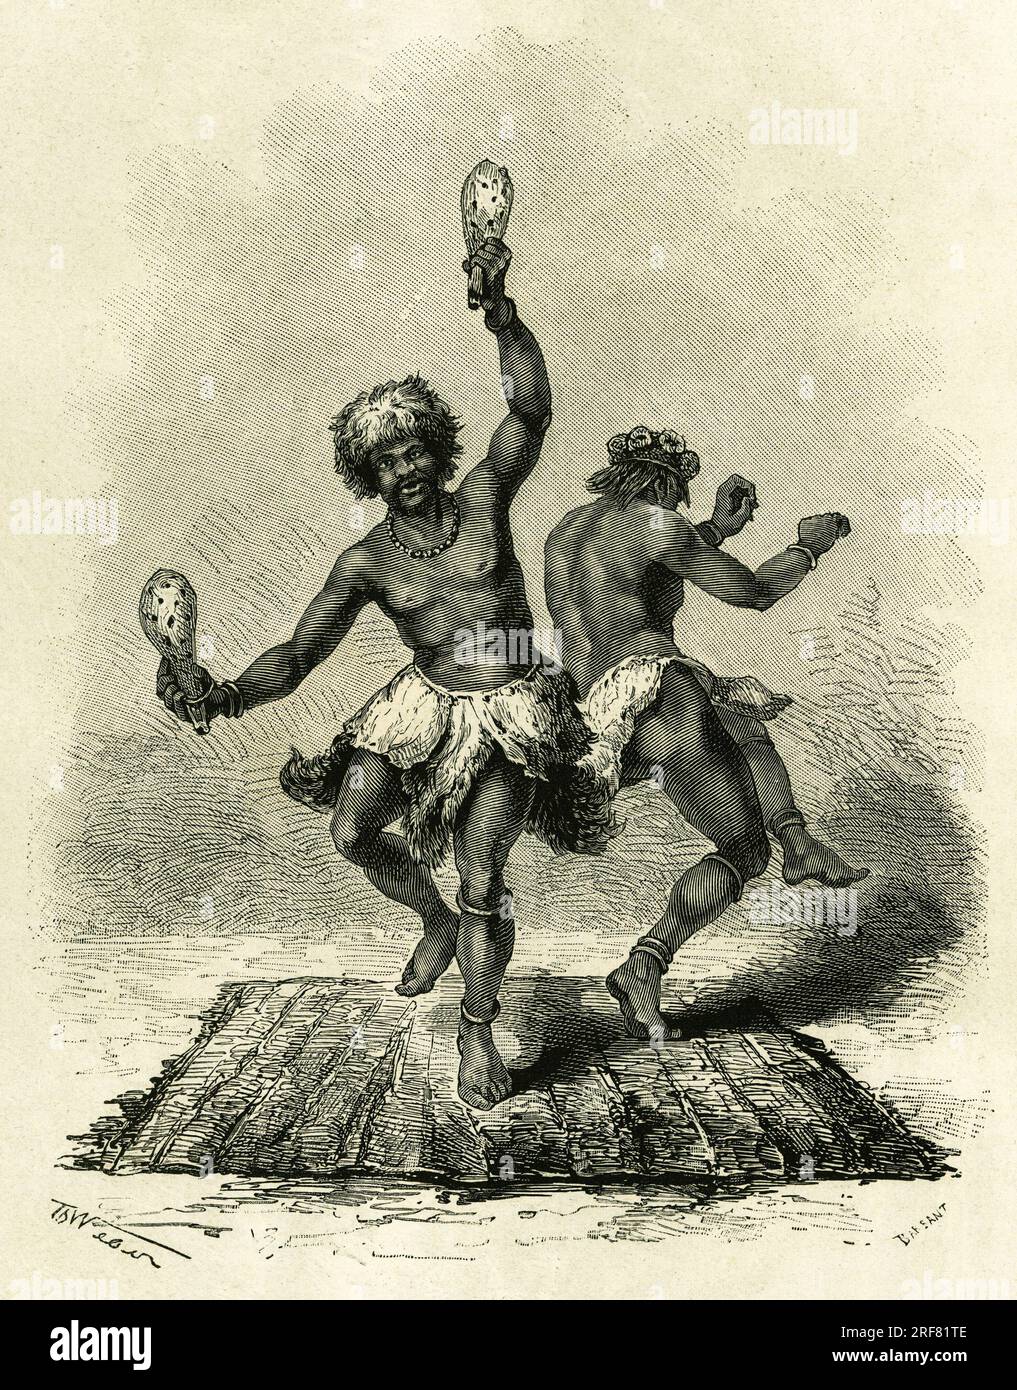 La Danse prophetique, particuliere a la tribu des Masoupias, dure toute la journee, accompagnee de tambours, de chants et de claquements de mains, les deux danseurs executent leur danse jusqu'a epuisement total, et lorsqu'ils tombent sans connaissance, ils laissent echapper les paroles fatidiques, a propos d'une chasse ou d'une guerre projetee par le roi. Gravure de Th.Weber, pour illustrer le recit 'Au pays des Marutses', en 1875-1879, par le docteur Emile Holub (1847-1902). Publie dans le Tour du monde, 2eme semestre 1883, sous la direction de Edouard Charton (1807-1890) , edition Hachette, Stock Photo